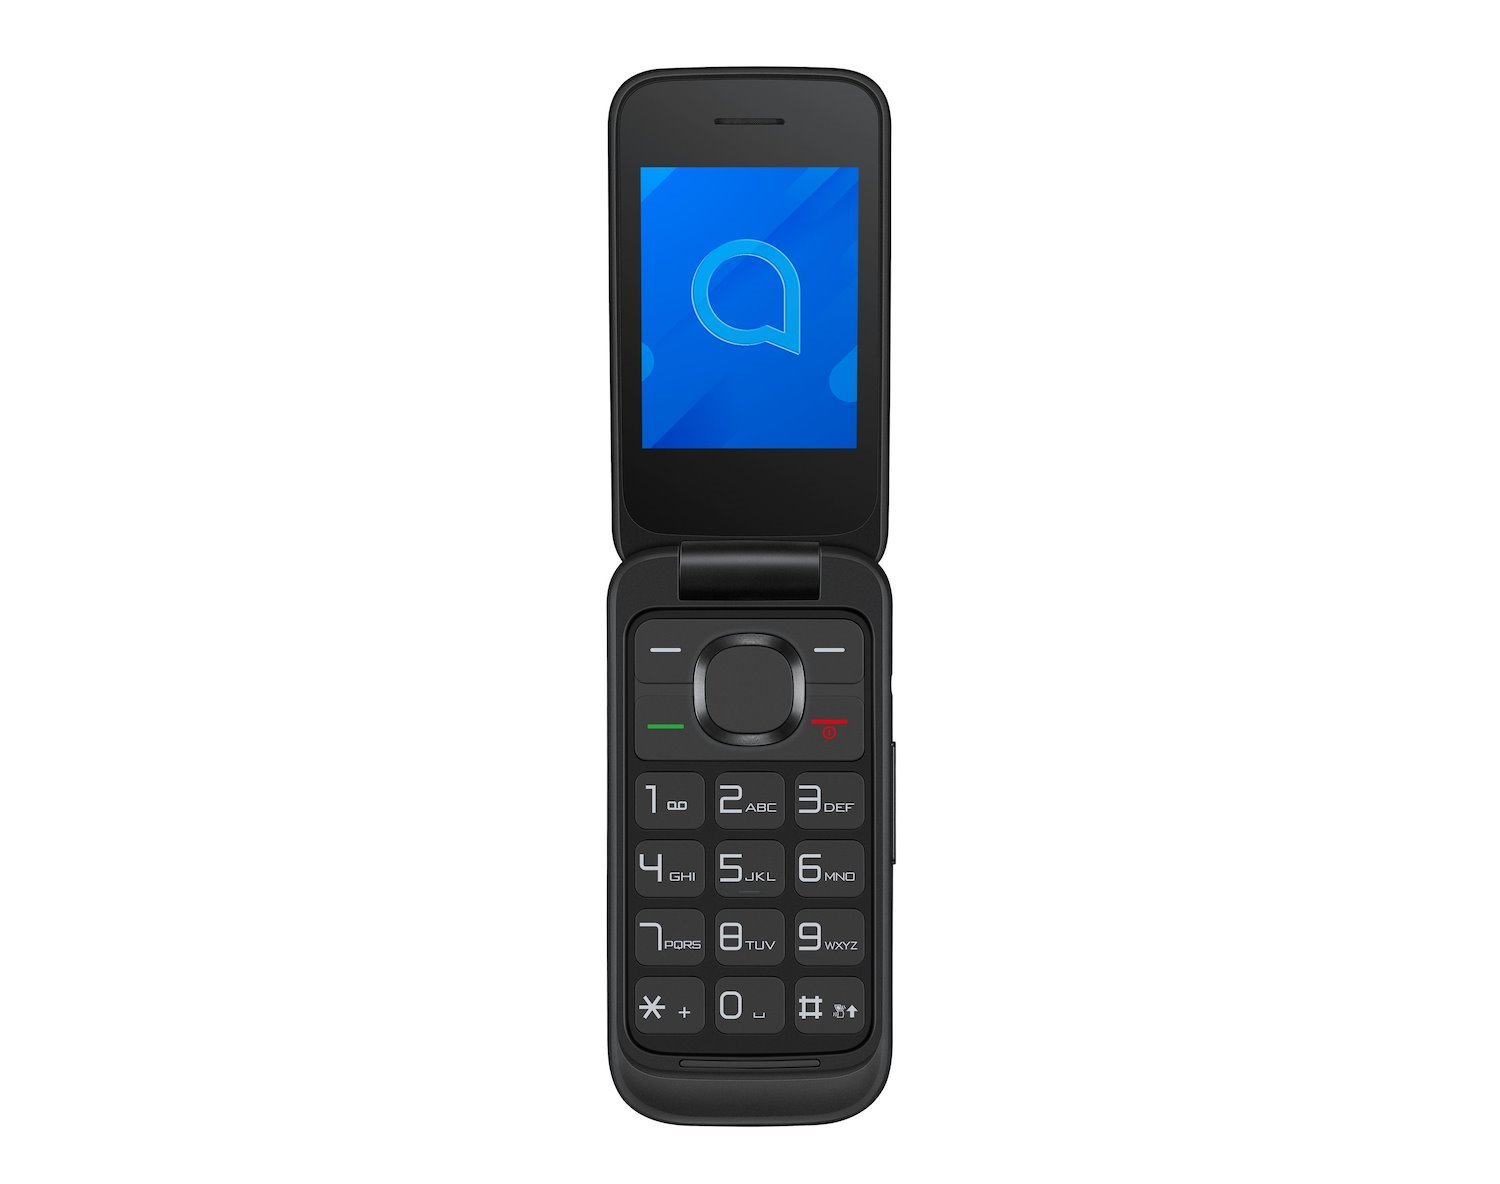 Alcatel 20.57 6.1 CM [2.4] 89 G Black Feature Phone (Alcatel 20.57 Volcano Black)